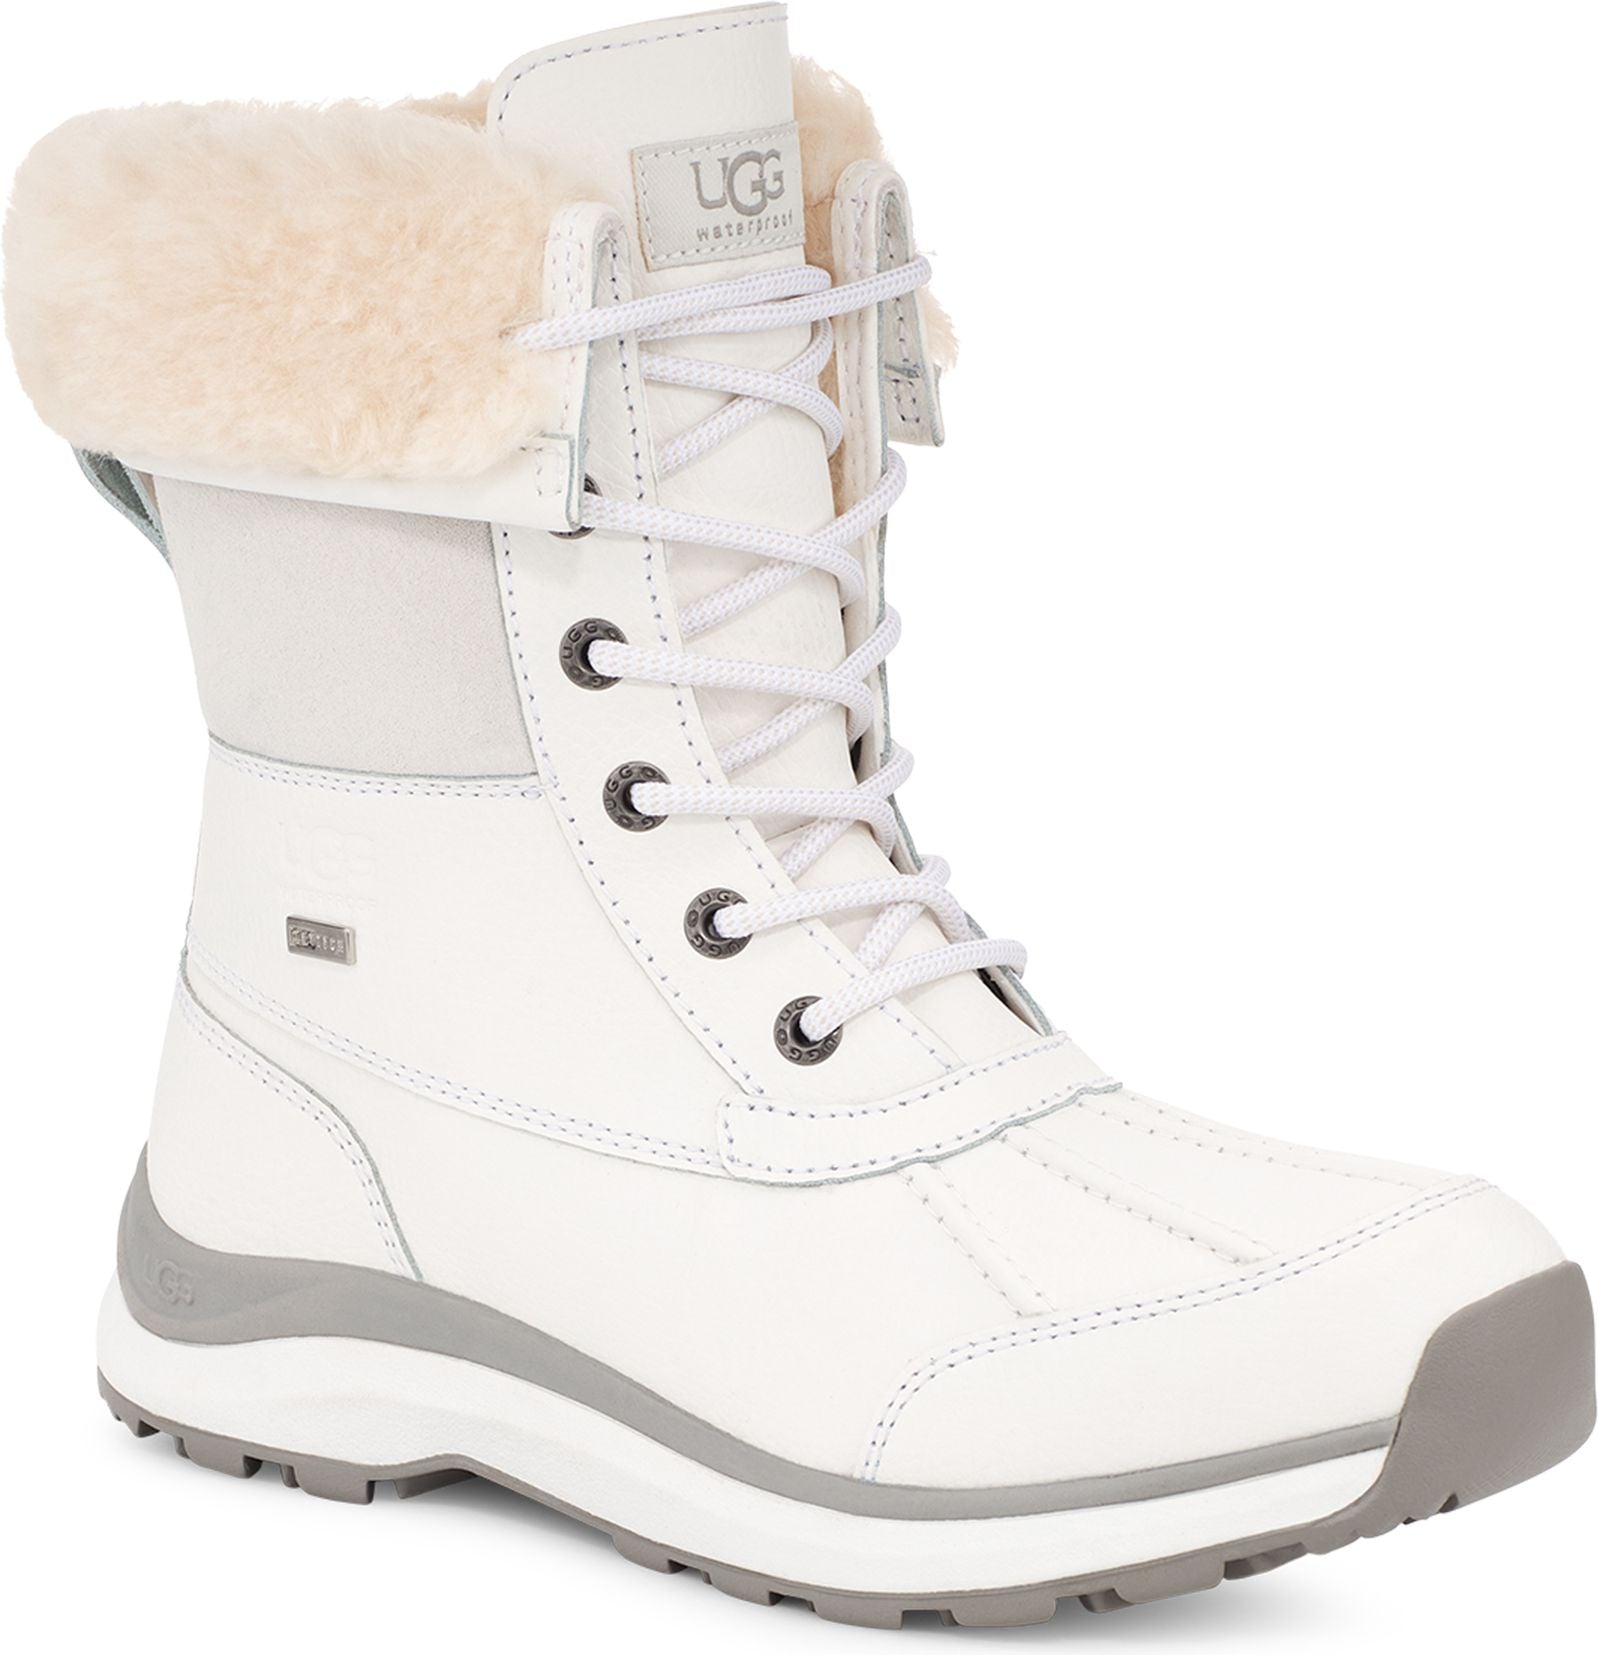 Adirondack Boot III Bright White